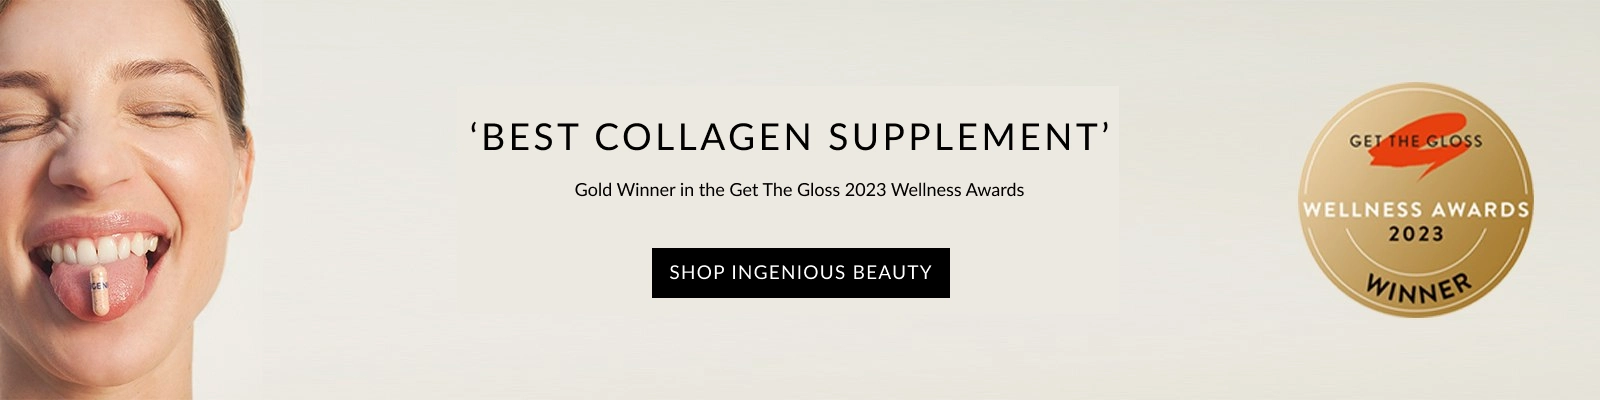 Best collagen supplement 2023